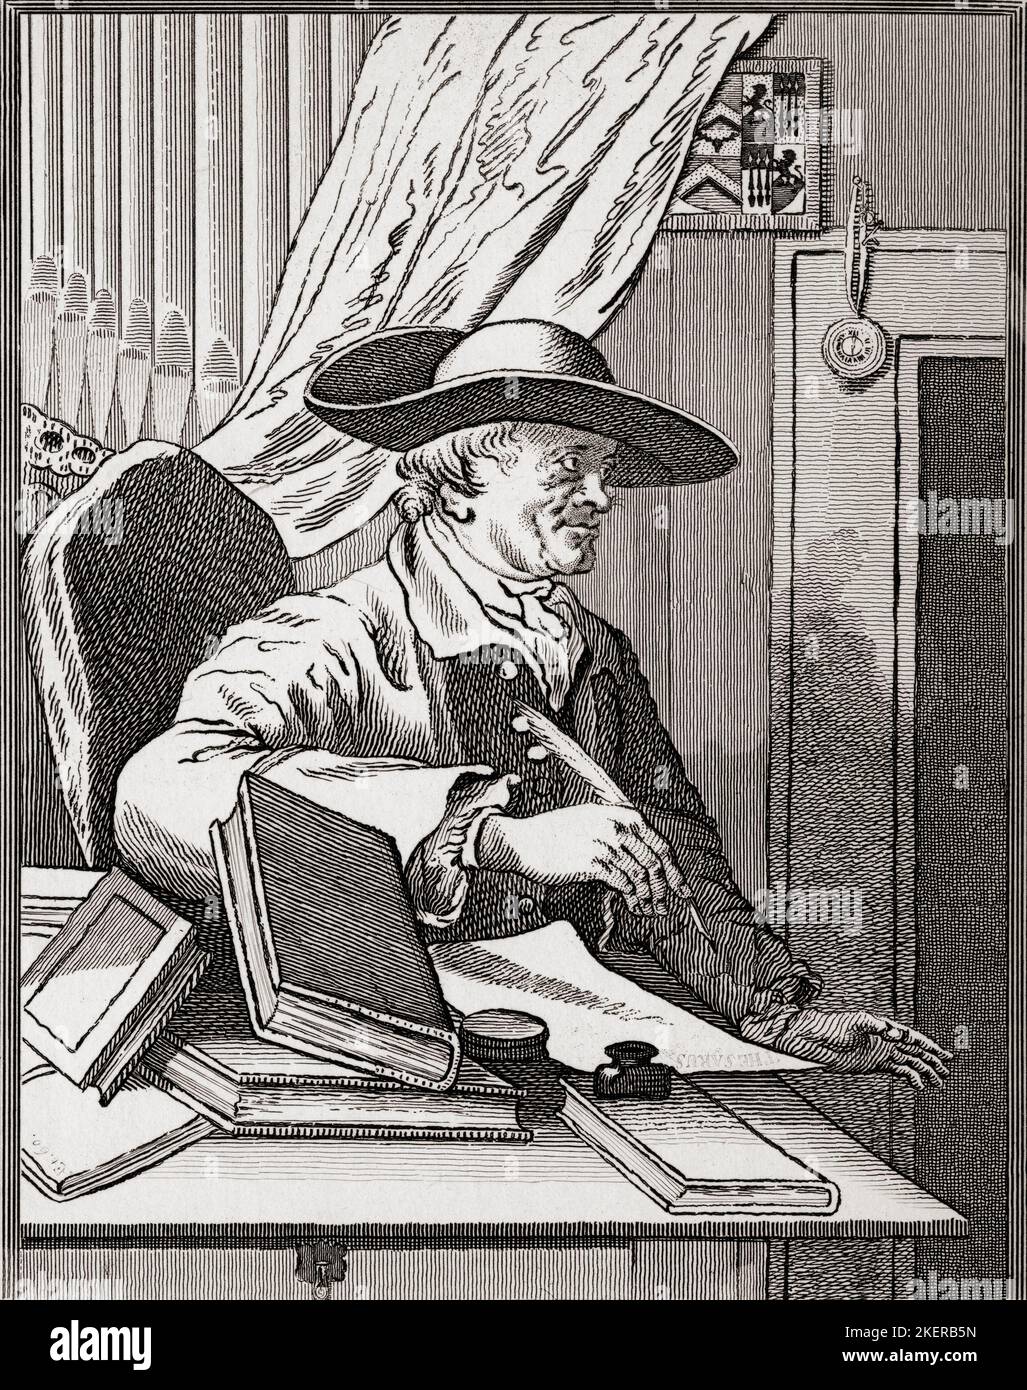 Dr Thomas Morell, 1703 à 1784. Érudit, critique et librettiste anglais. De The Works of Hogarth publié Londres 1833. Banque D'Images